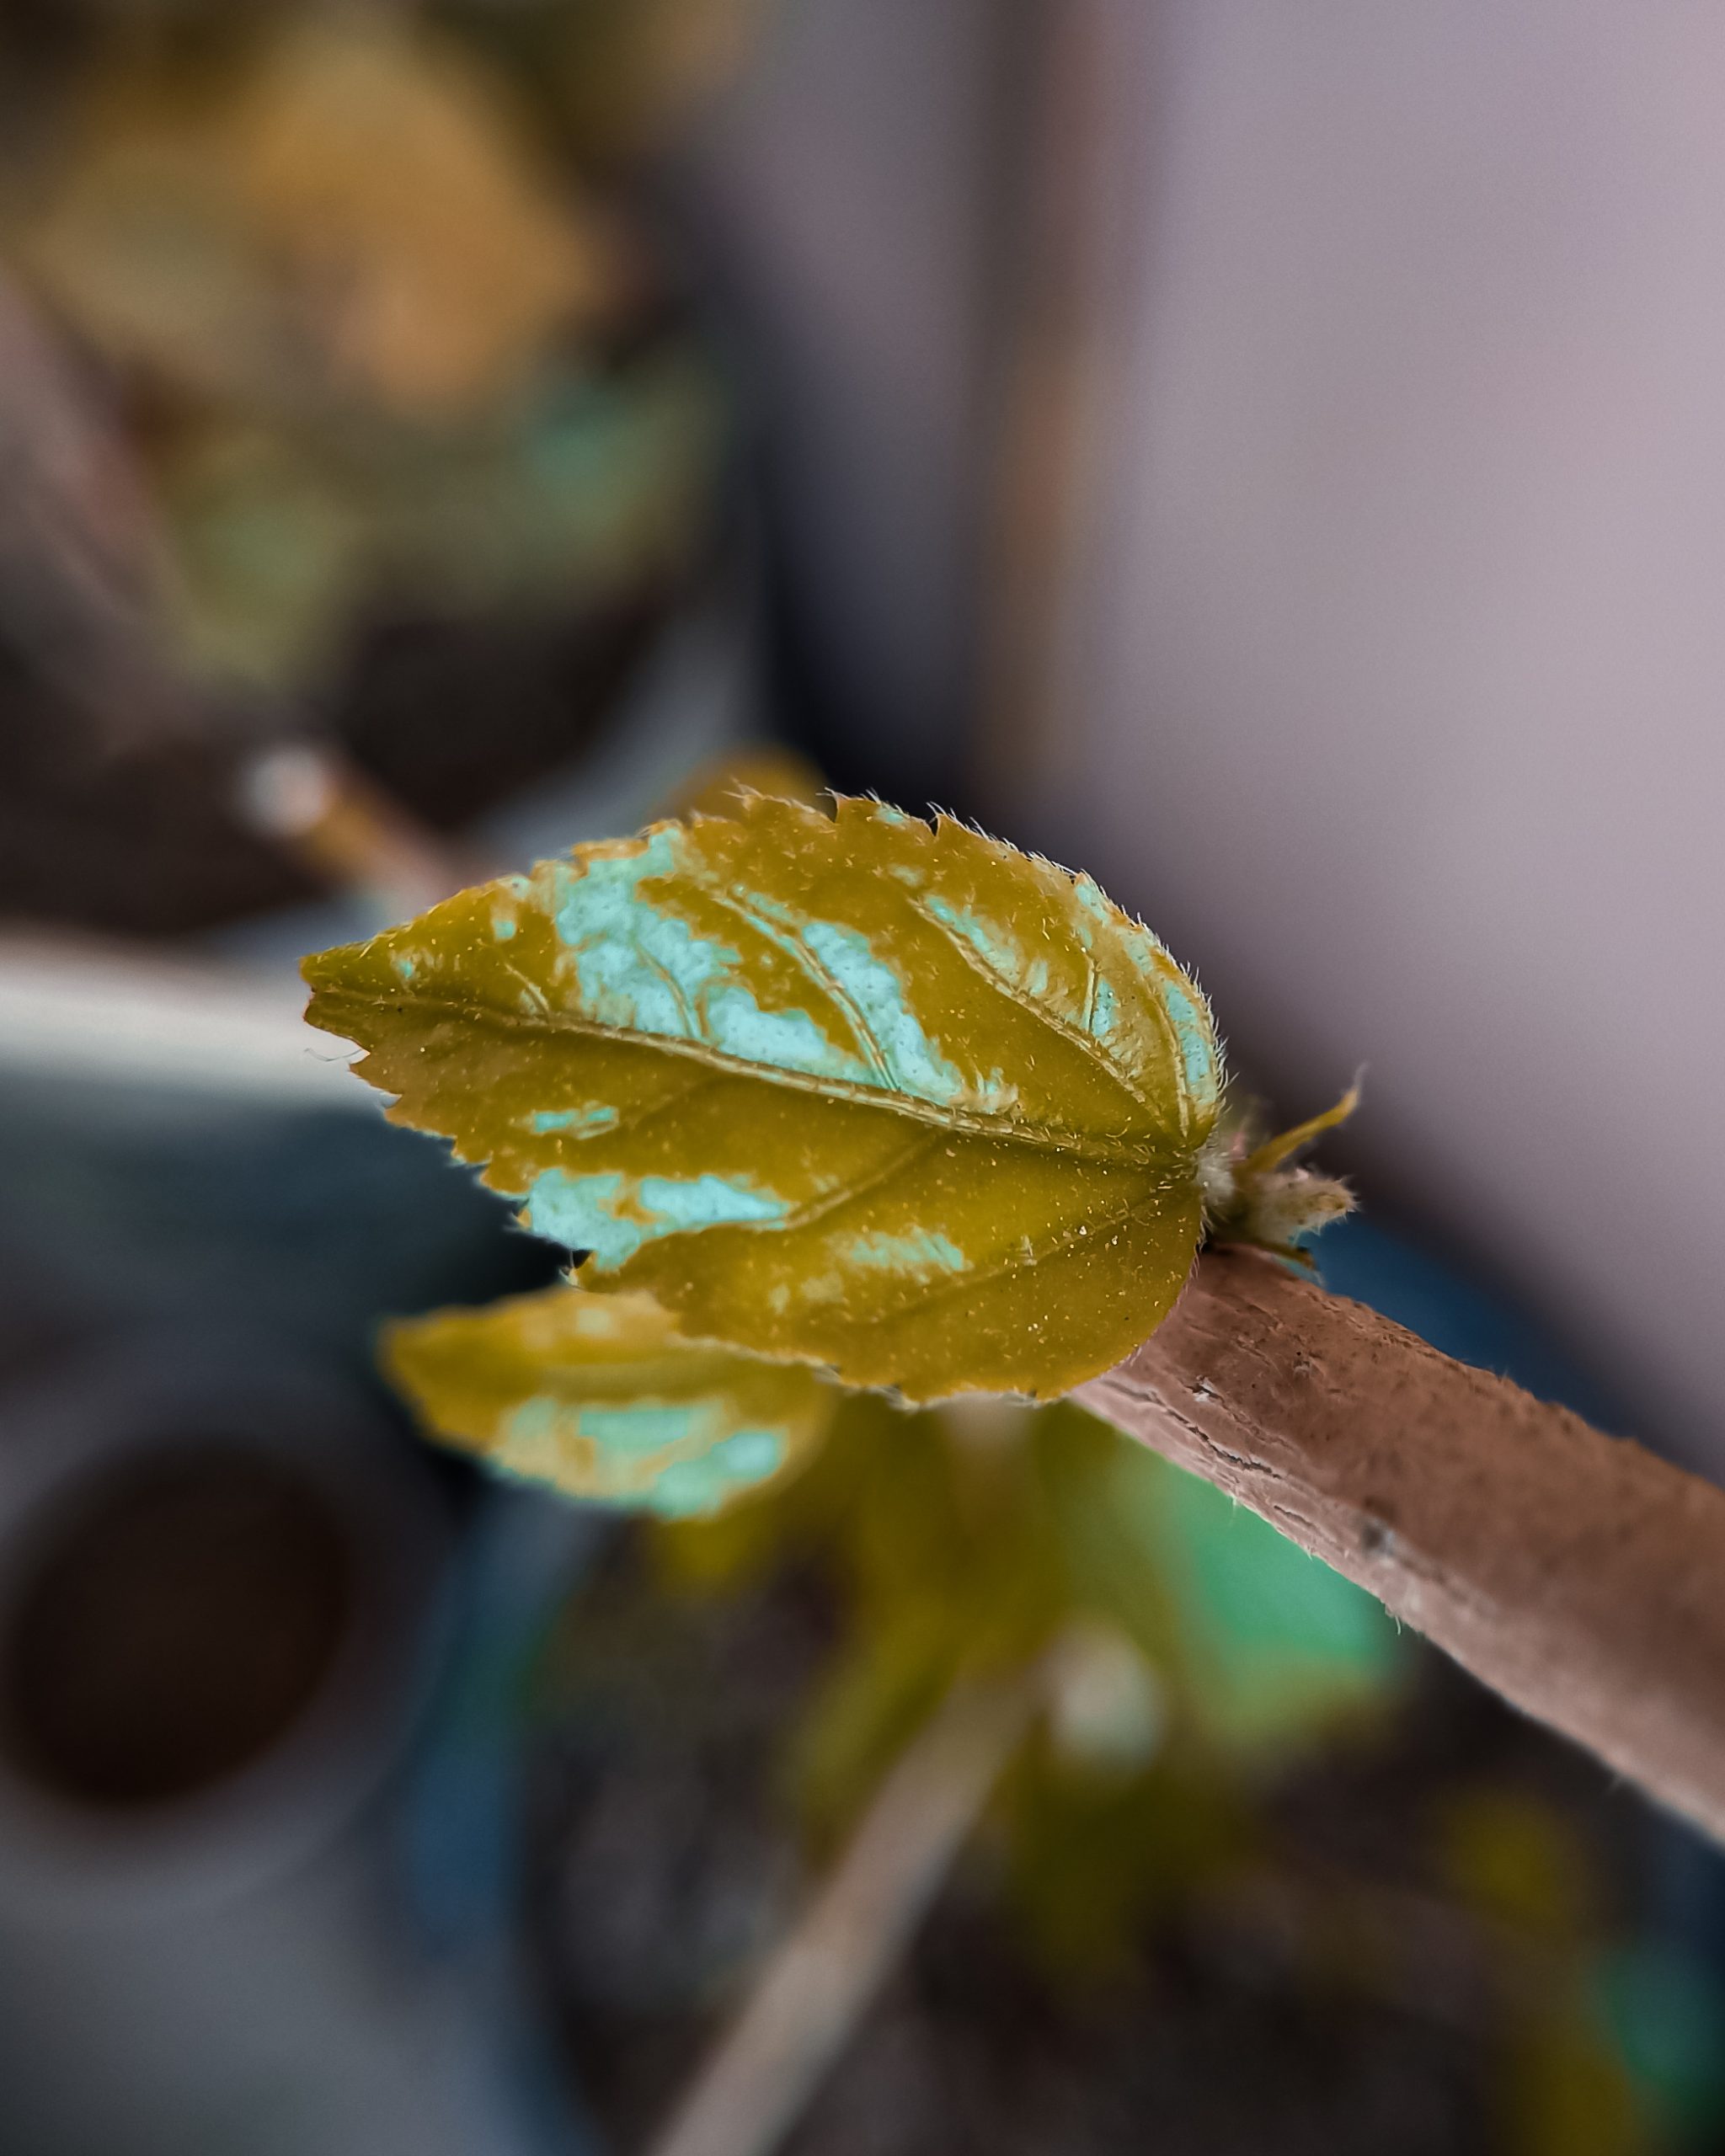 A small leaf